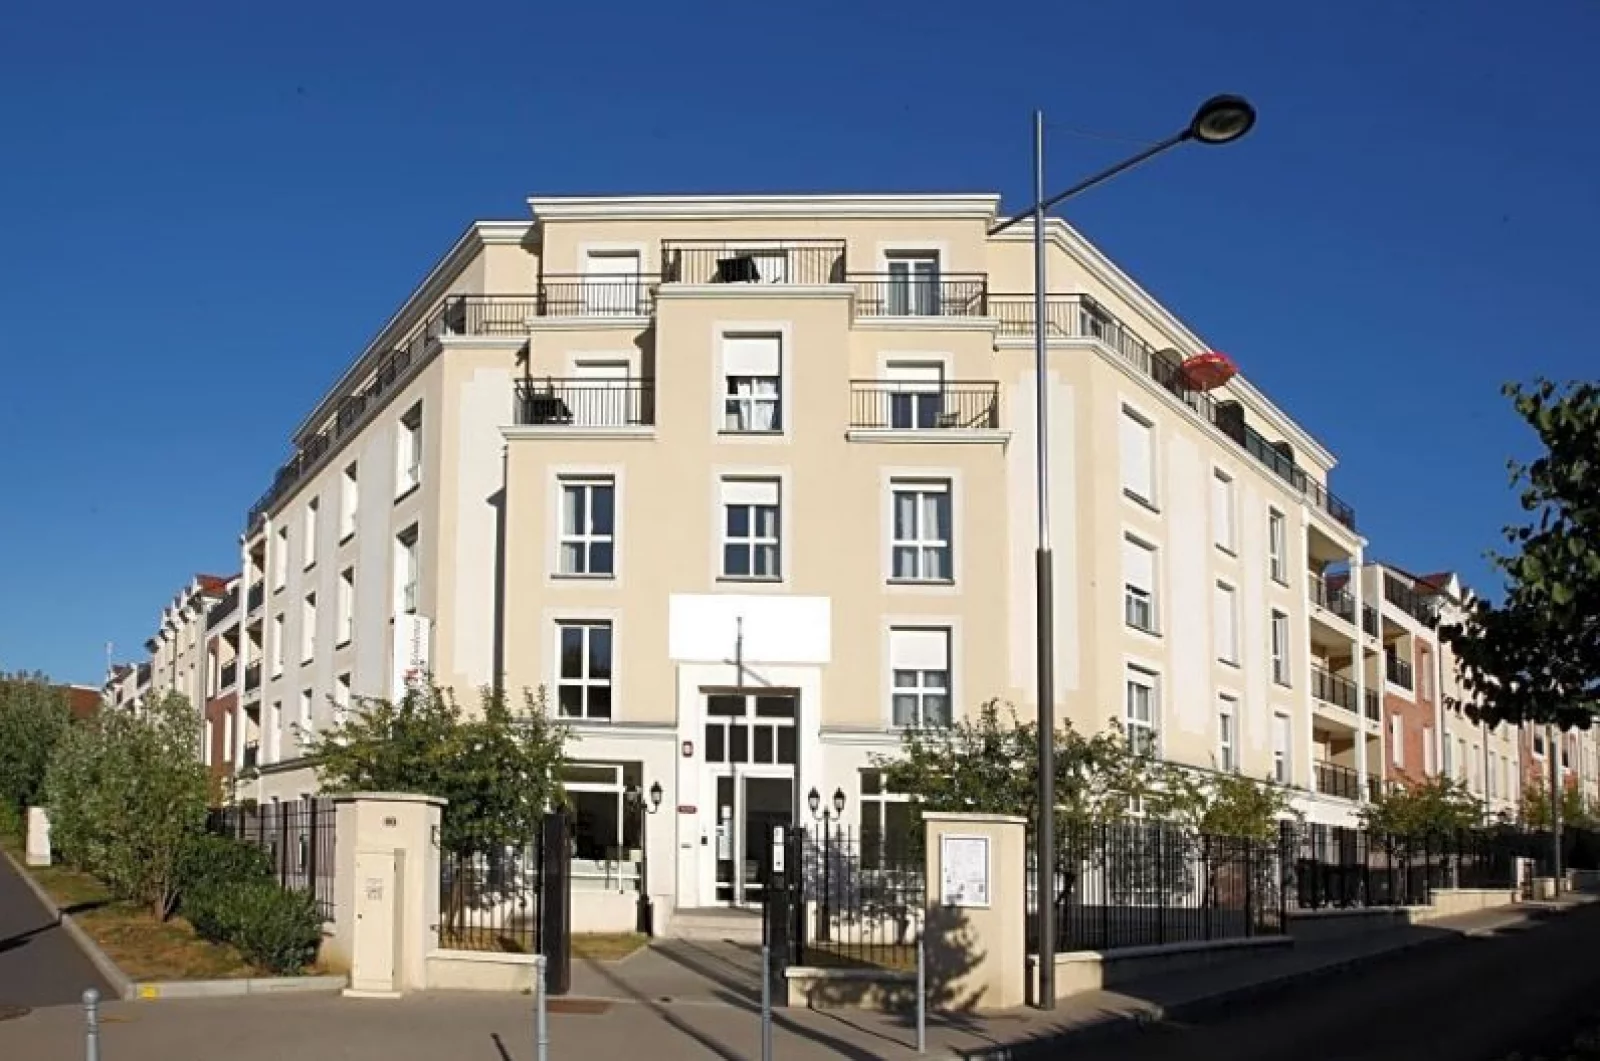 Location appartement meublé duplex 4 pièces 81m² (Paris est - Bry s/ Marne)